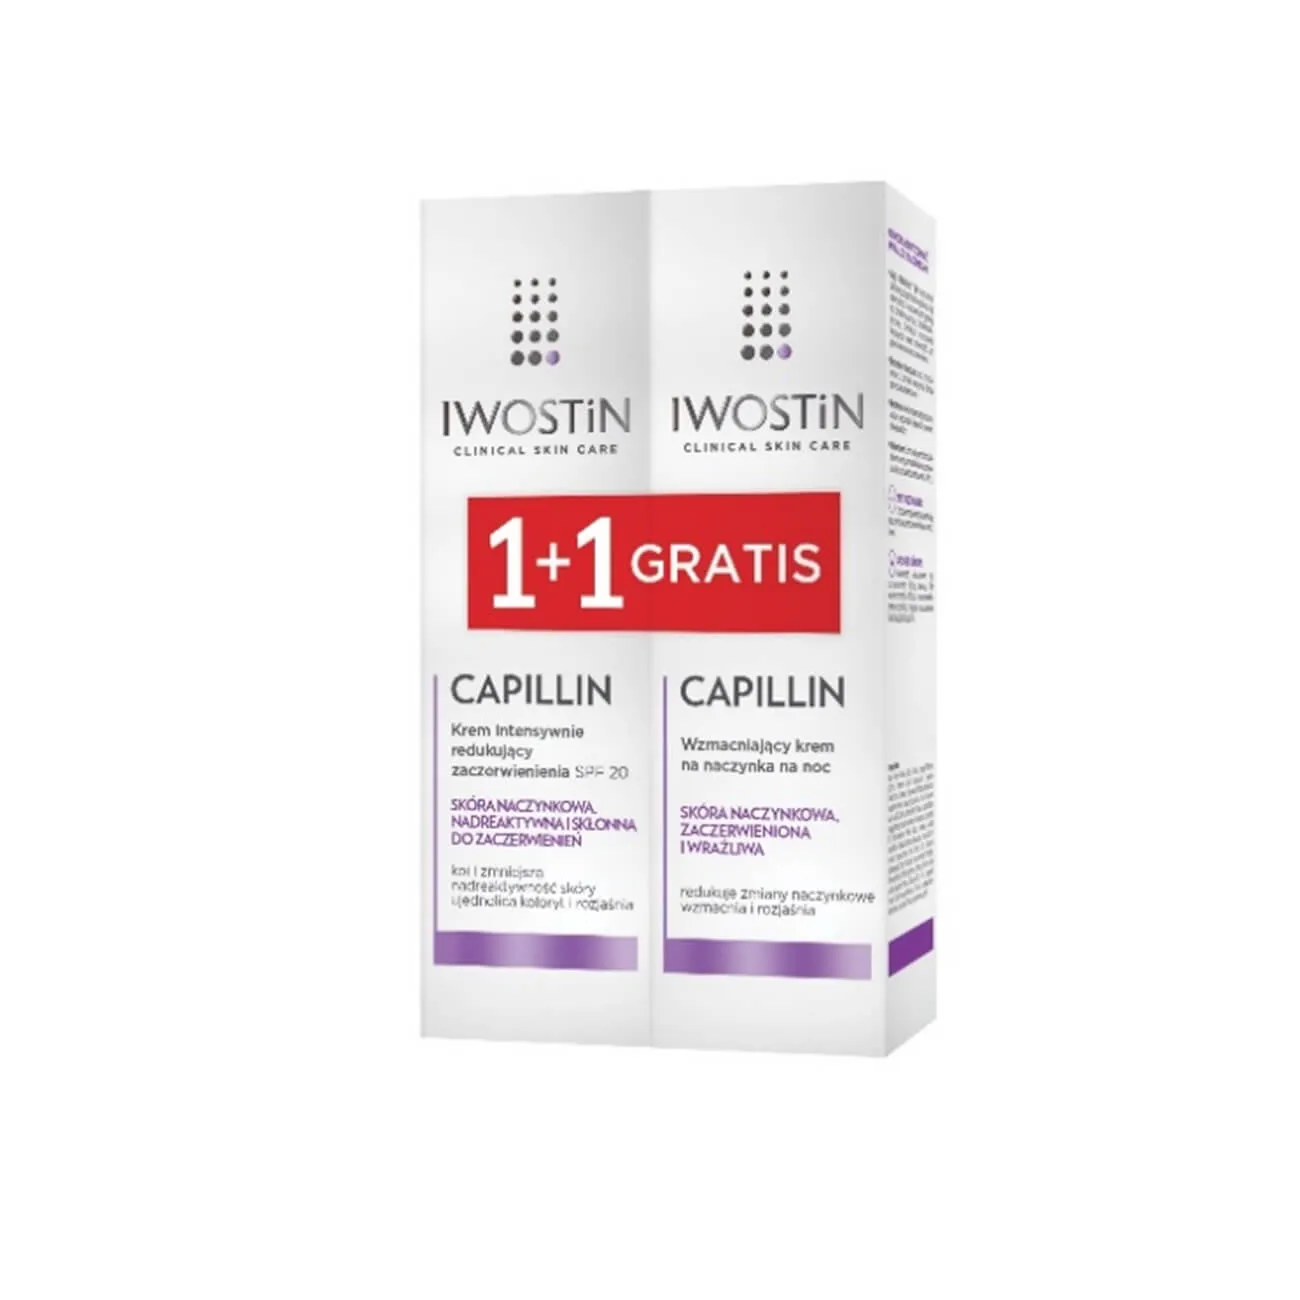 Iwostin Capillin, krem intensywnie redukujący zaczerwienienia, SPF 20, 40 ml + wzmacniający krem na naczynka na noc, 40 ml